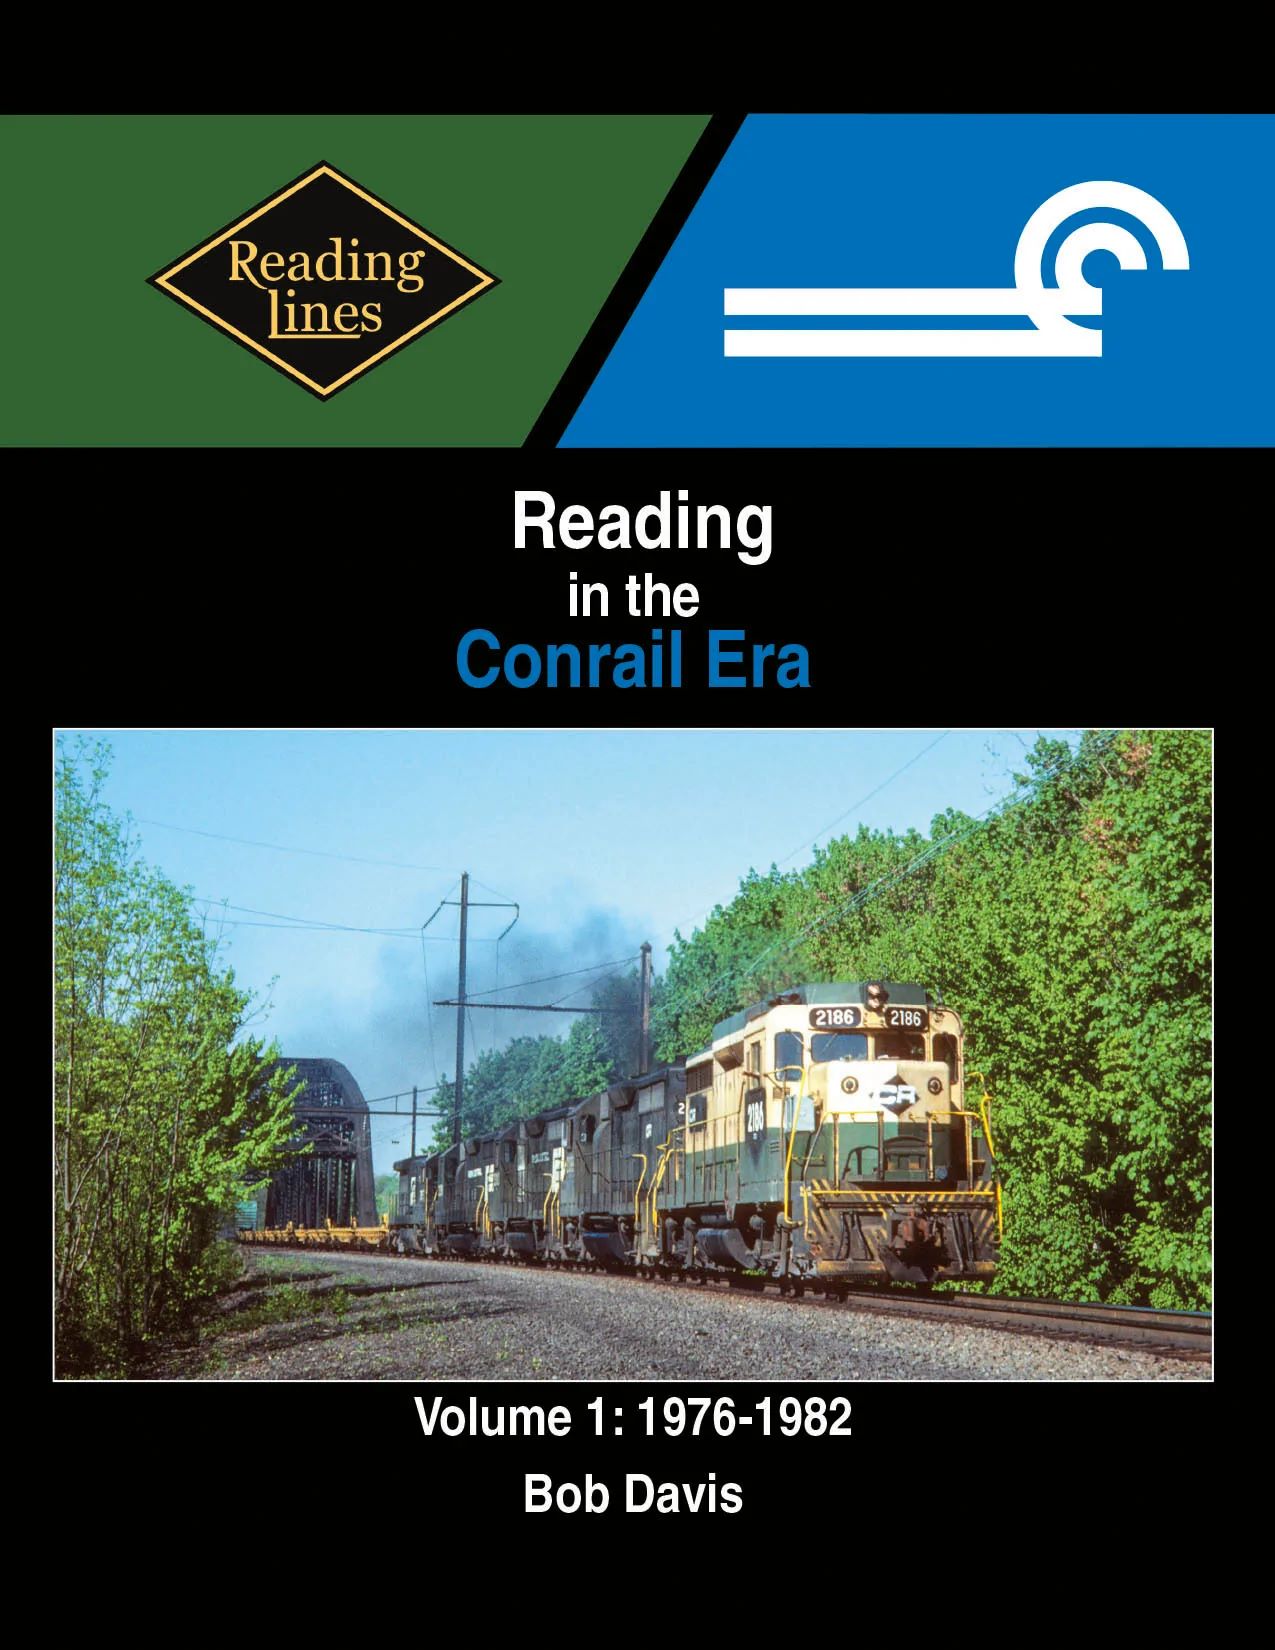 Reading in the Conrail Era, Vol. 1